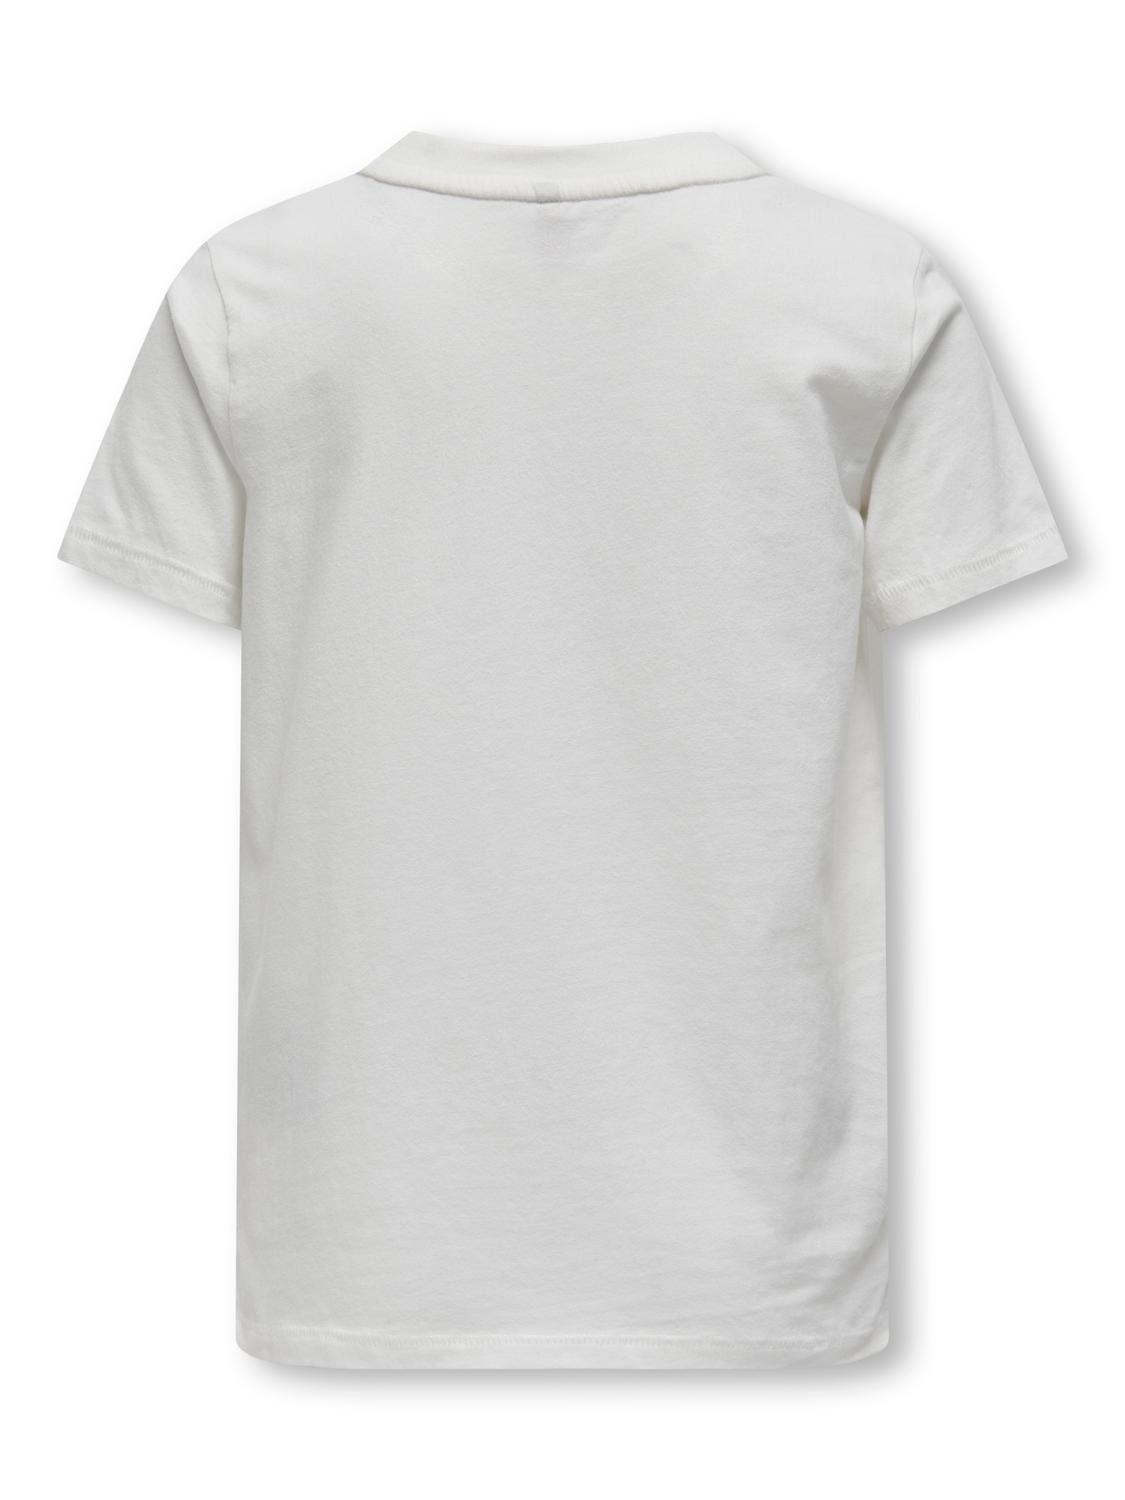 ONLY T-shirt Box Fit Paricollo -Cloud Dancer - 15331149